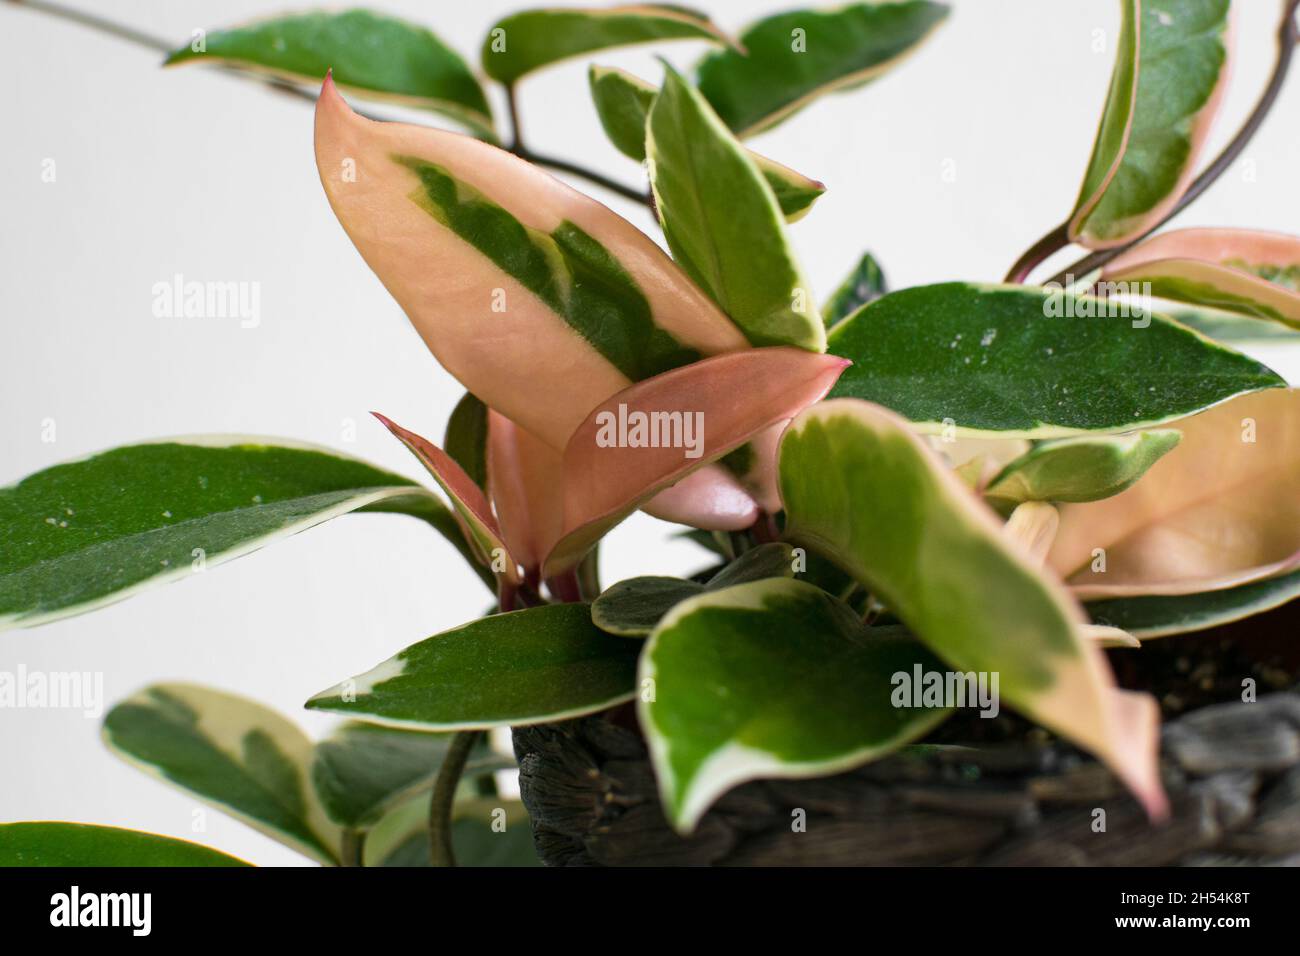 Fogliame variegato di hoya carnosa variegata 'Krimson Queen' su sfondo bianco. Esotico dettaglio di piante casalinghe alla moda con una notevole varietà. Foto Stock